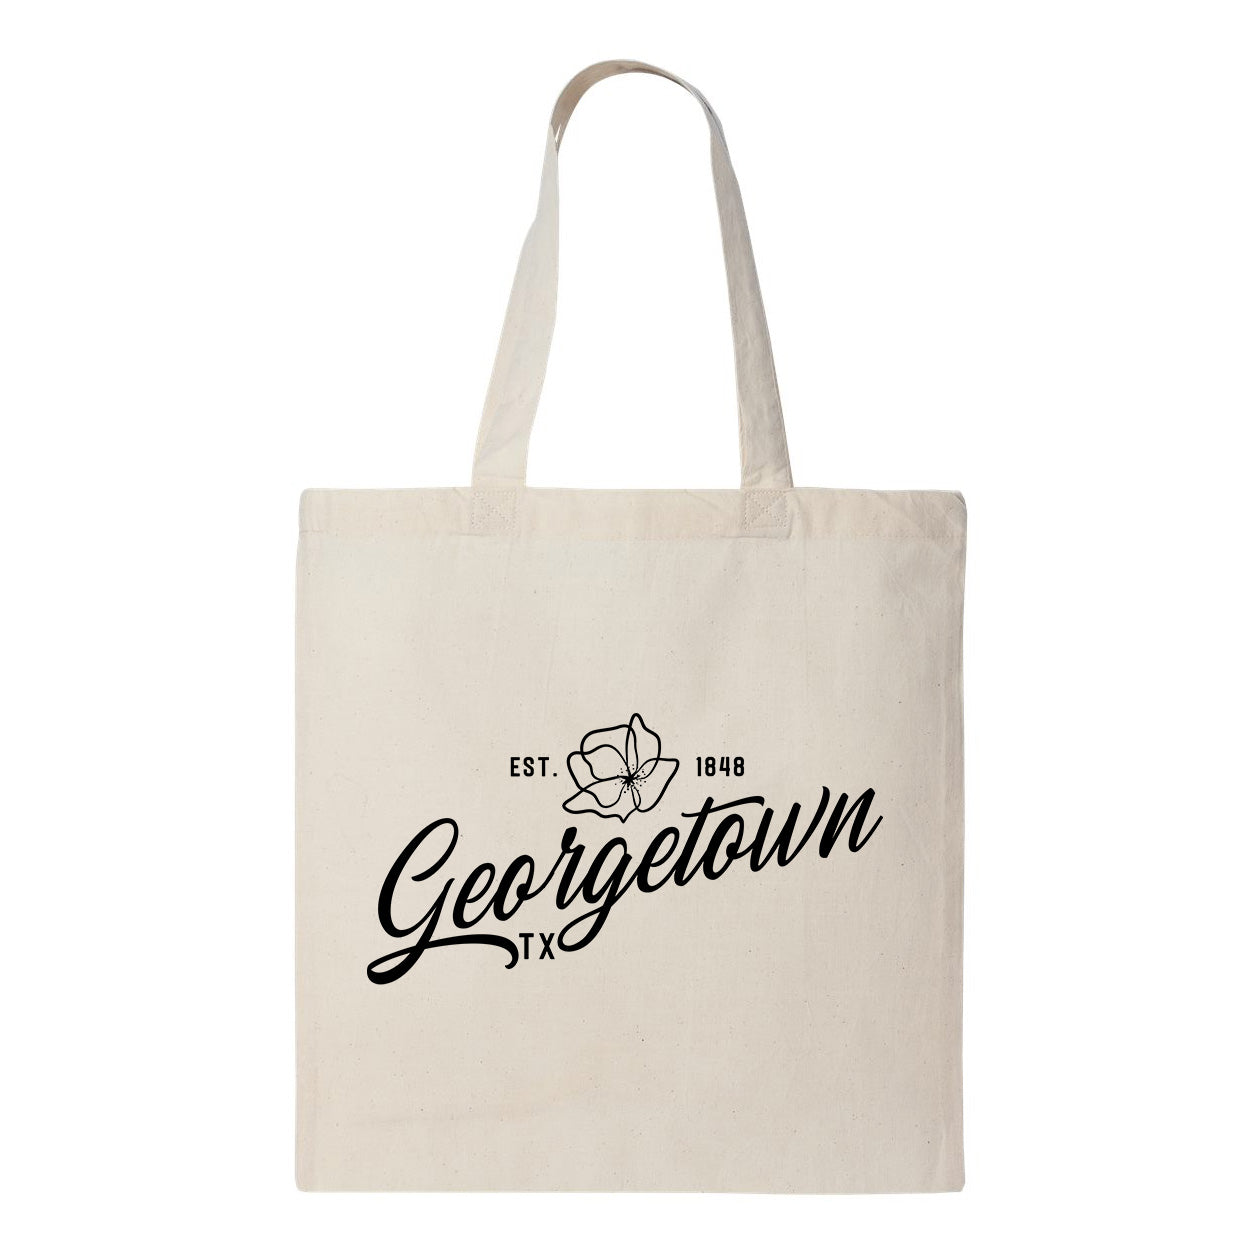 Georgetown Texas Tote Bag - Script